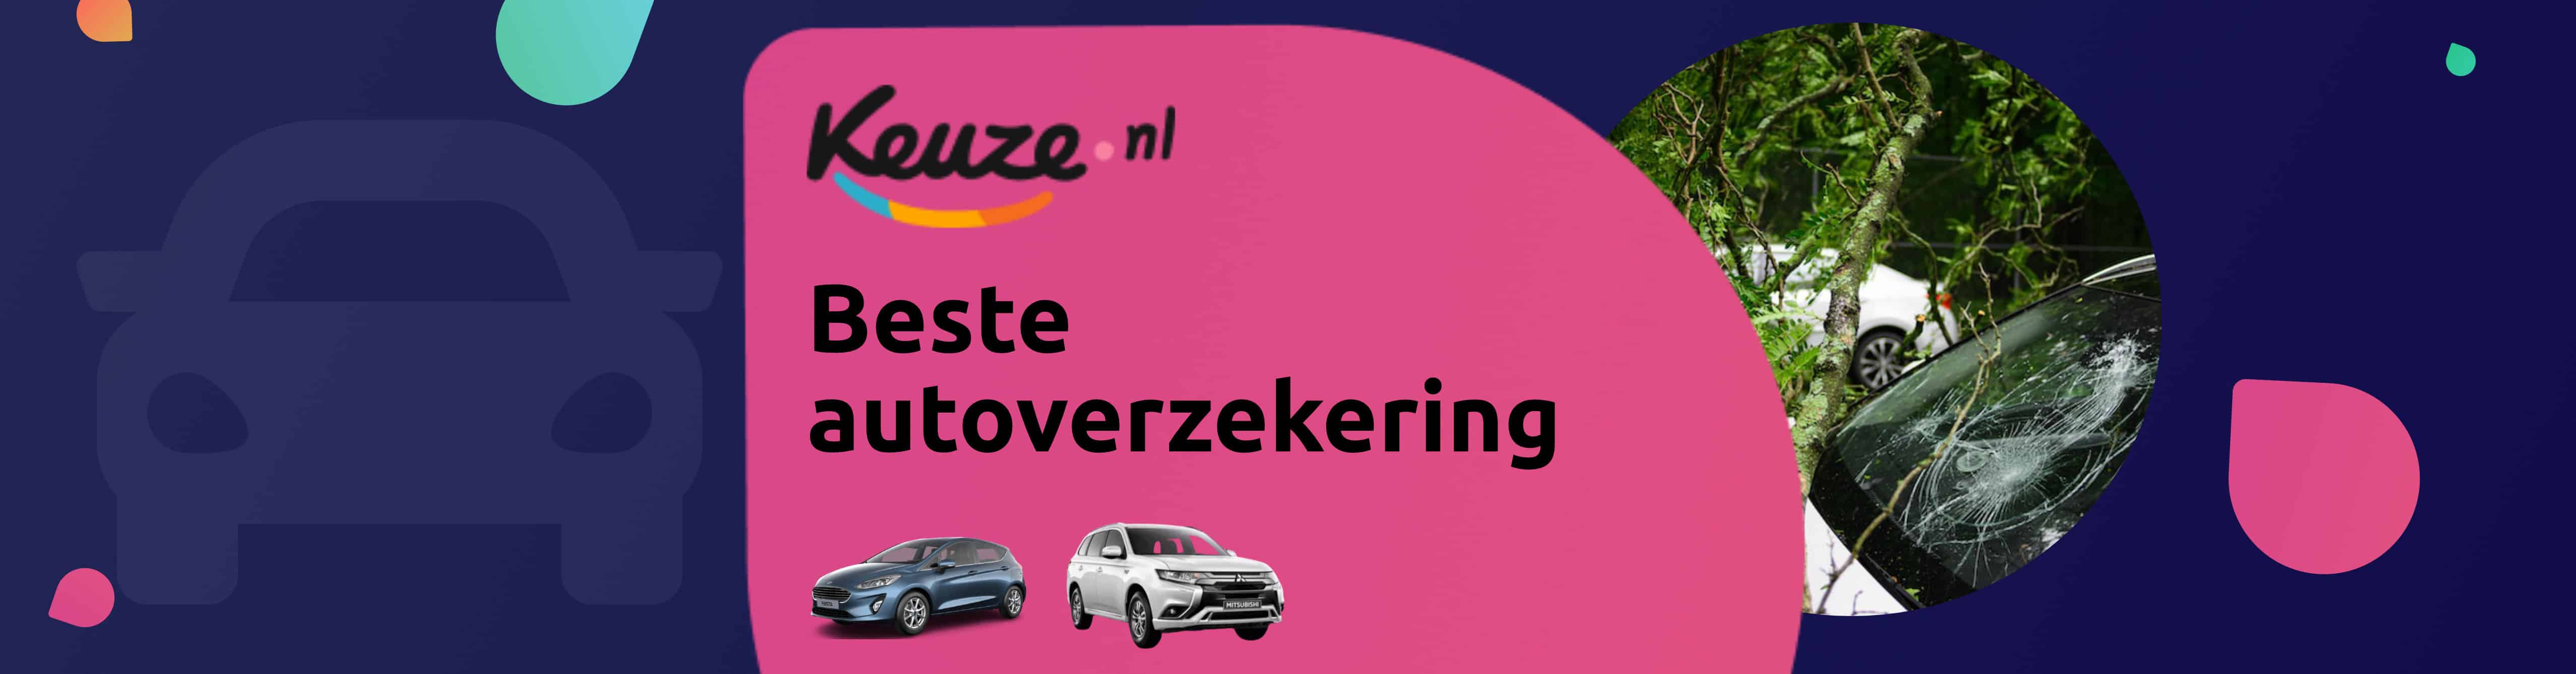 beste autoverzekering volgens keuze.nl